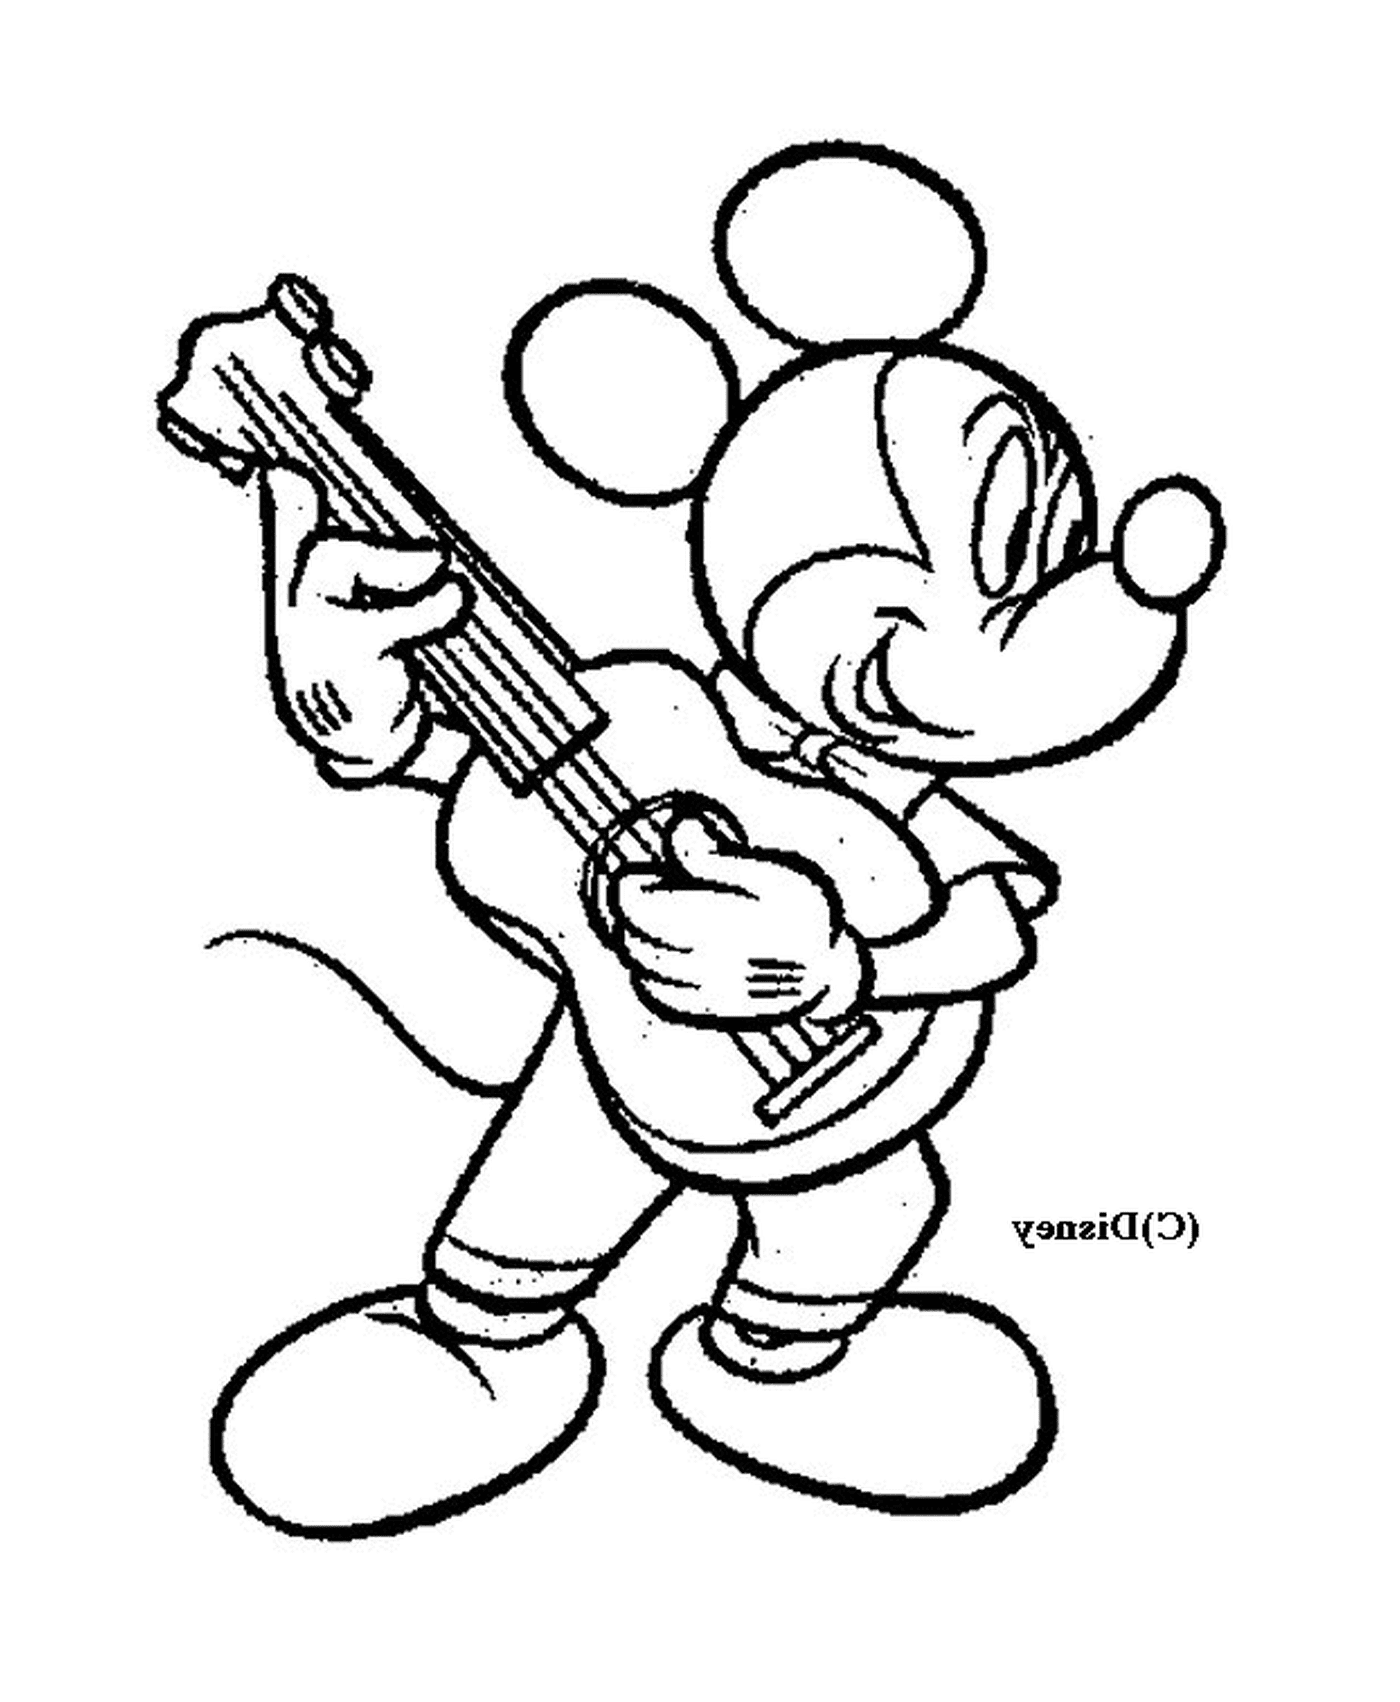  Mickey spielt Gitarre: Mickey Mouse spielt Gitarre 